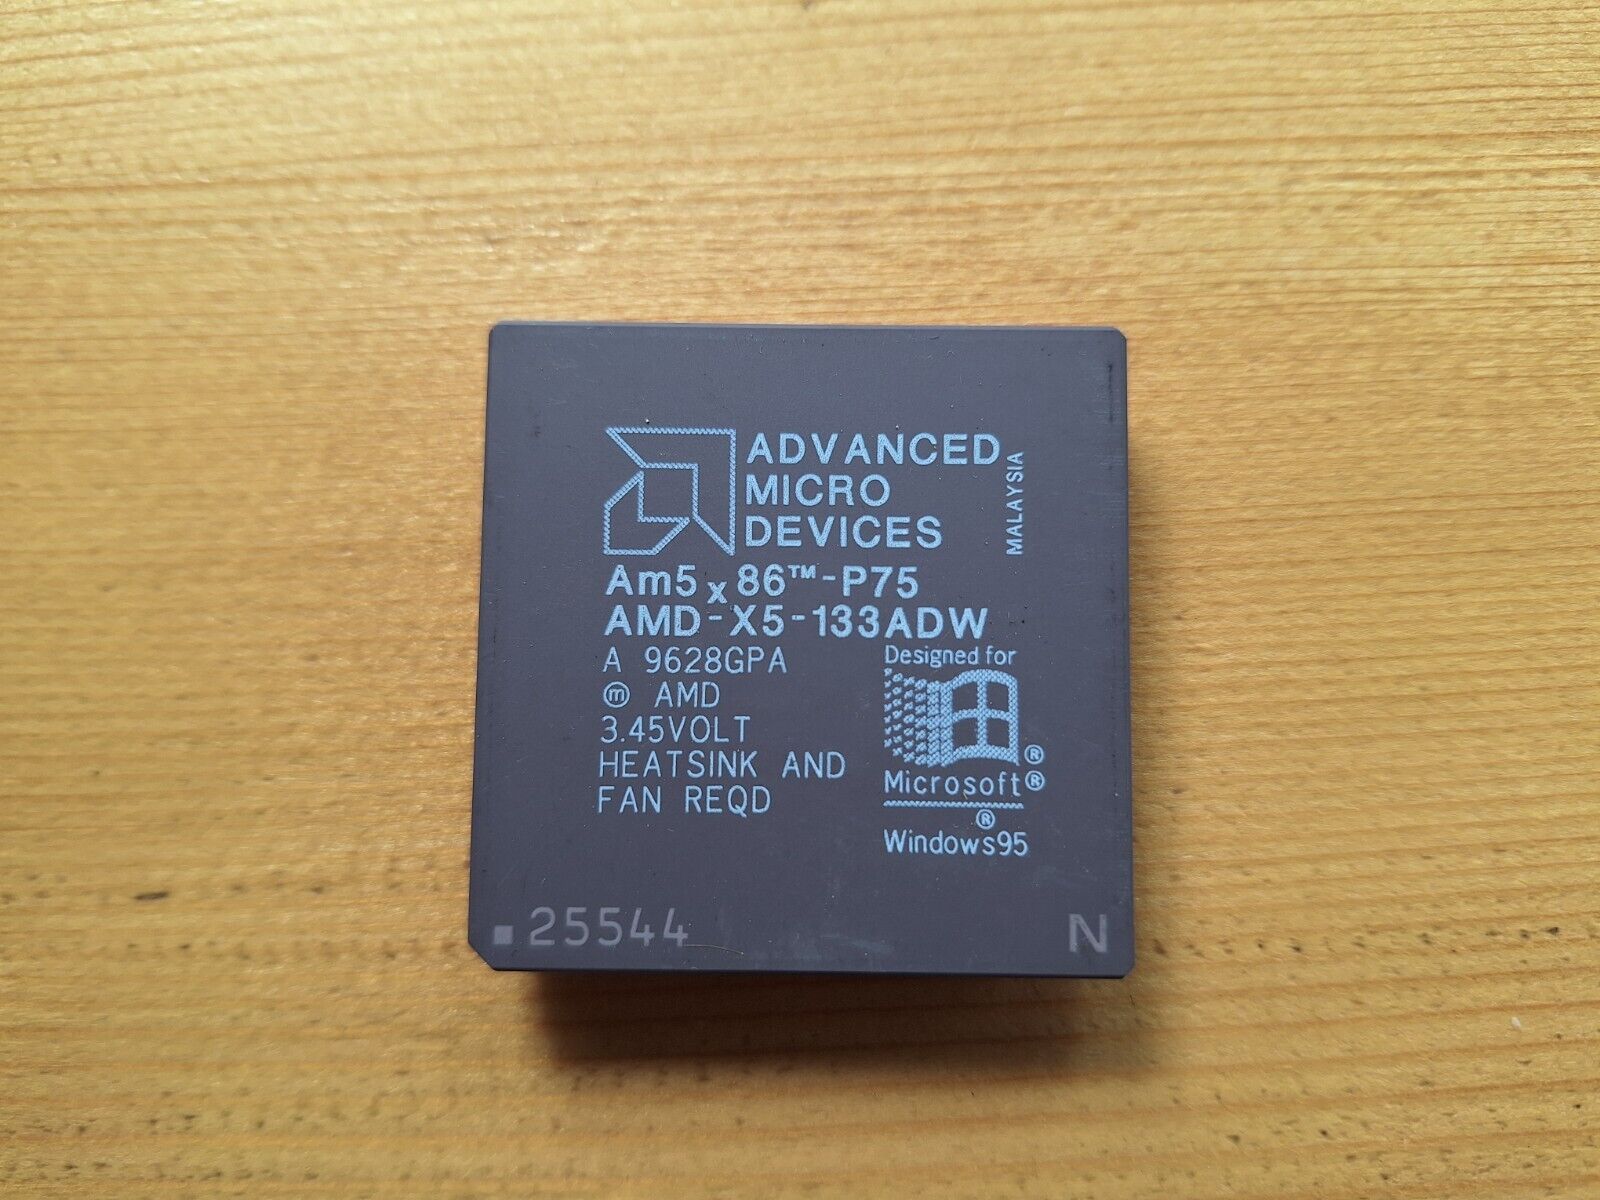 5x86 5x86-P75 AMD-X5-133ADZ AMD-X5-133ADW vintage CPU GOLD